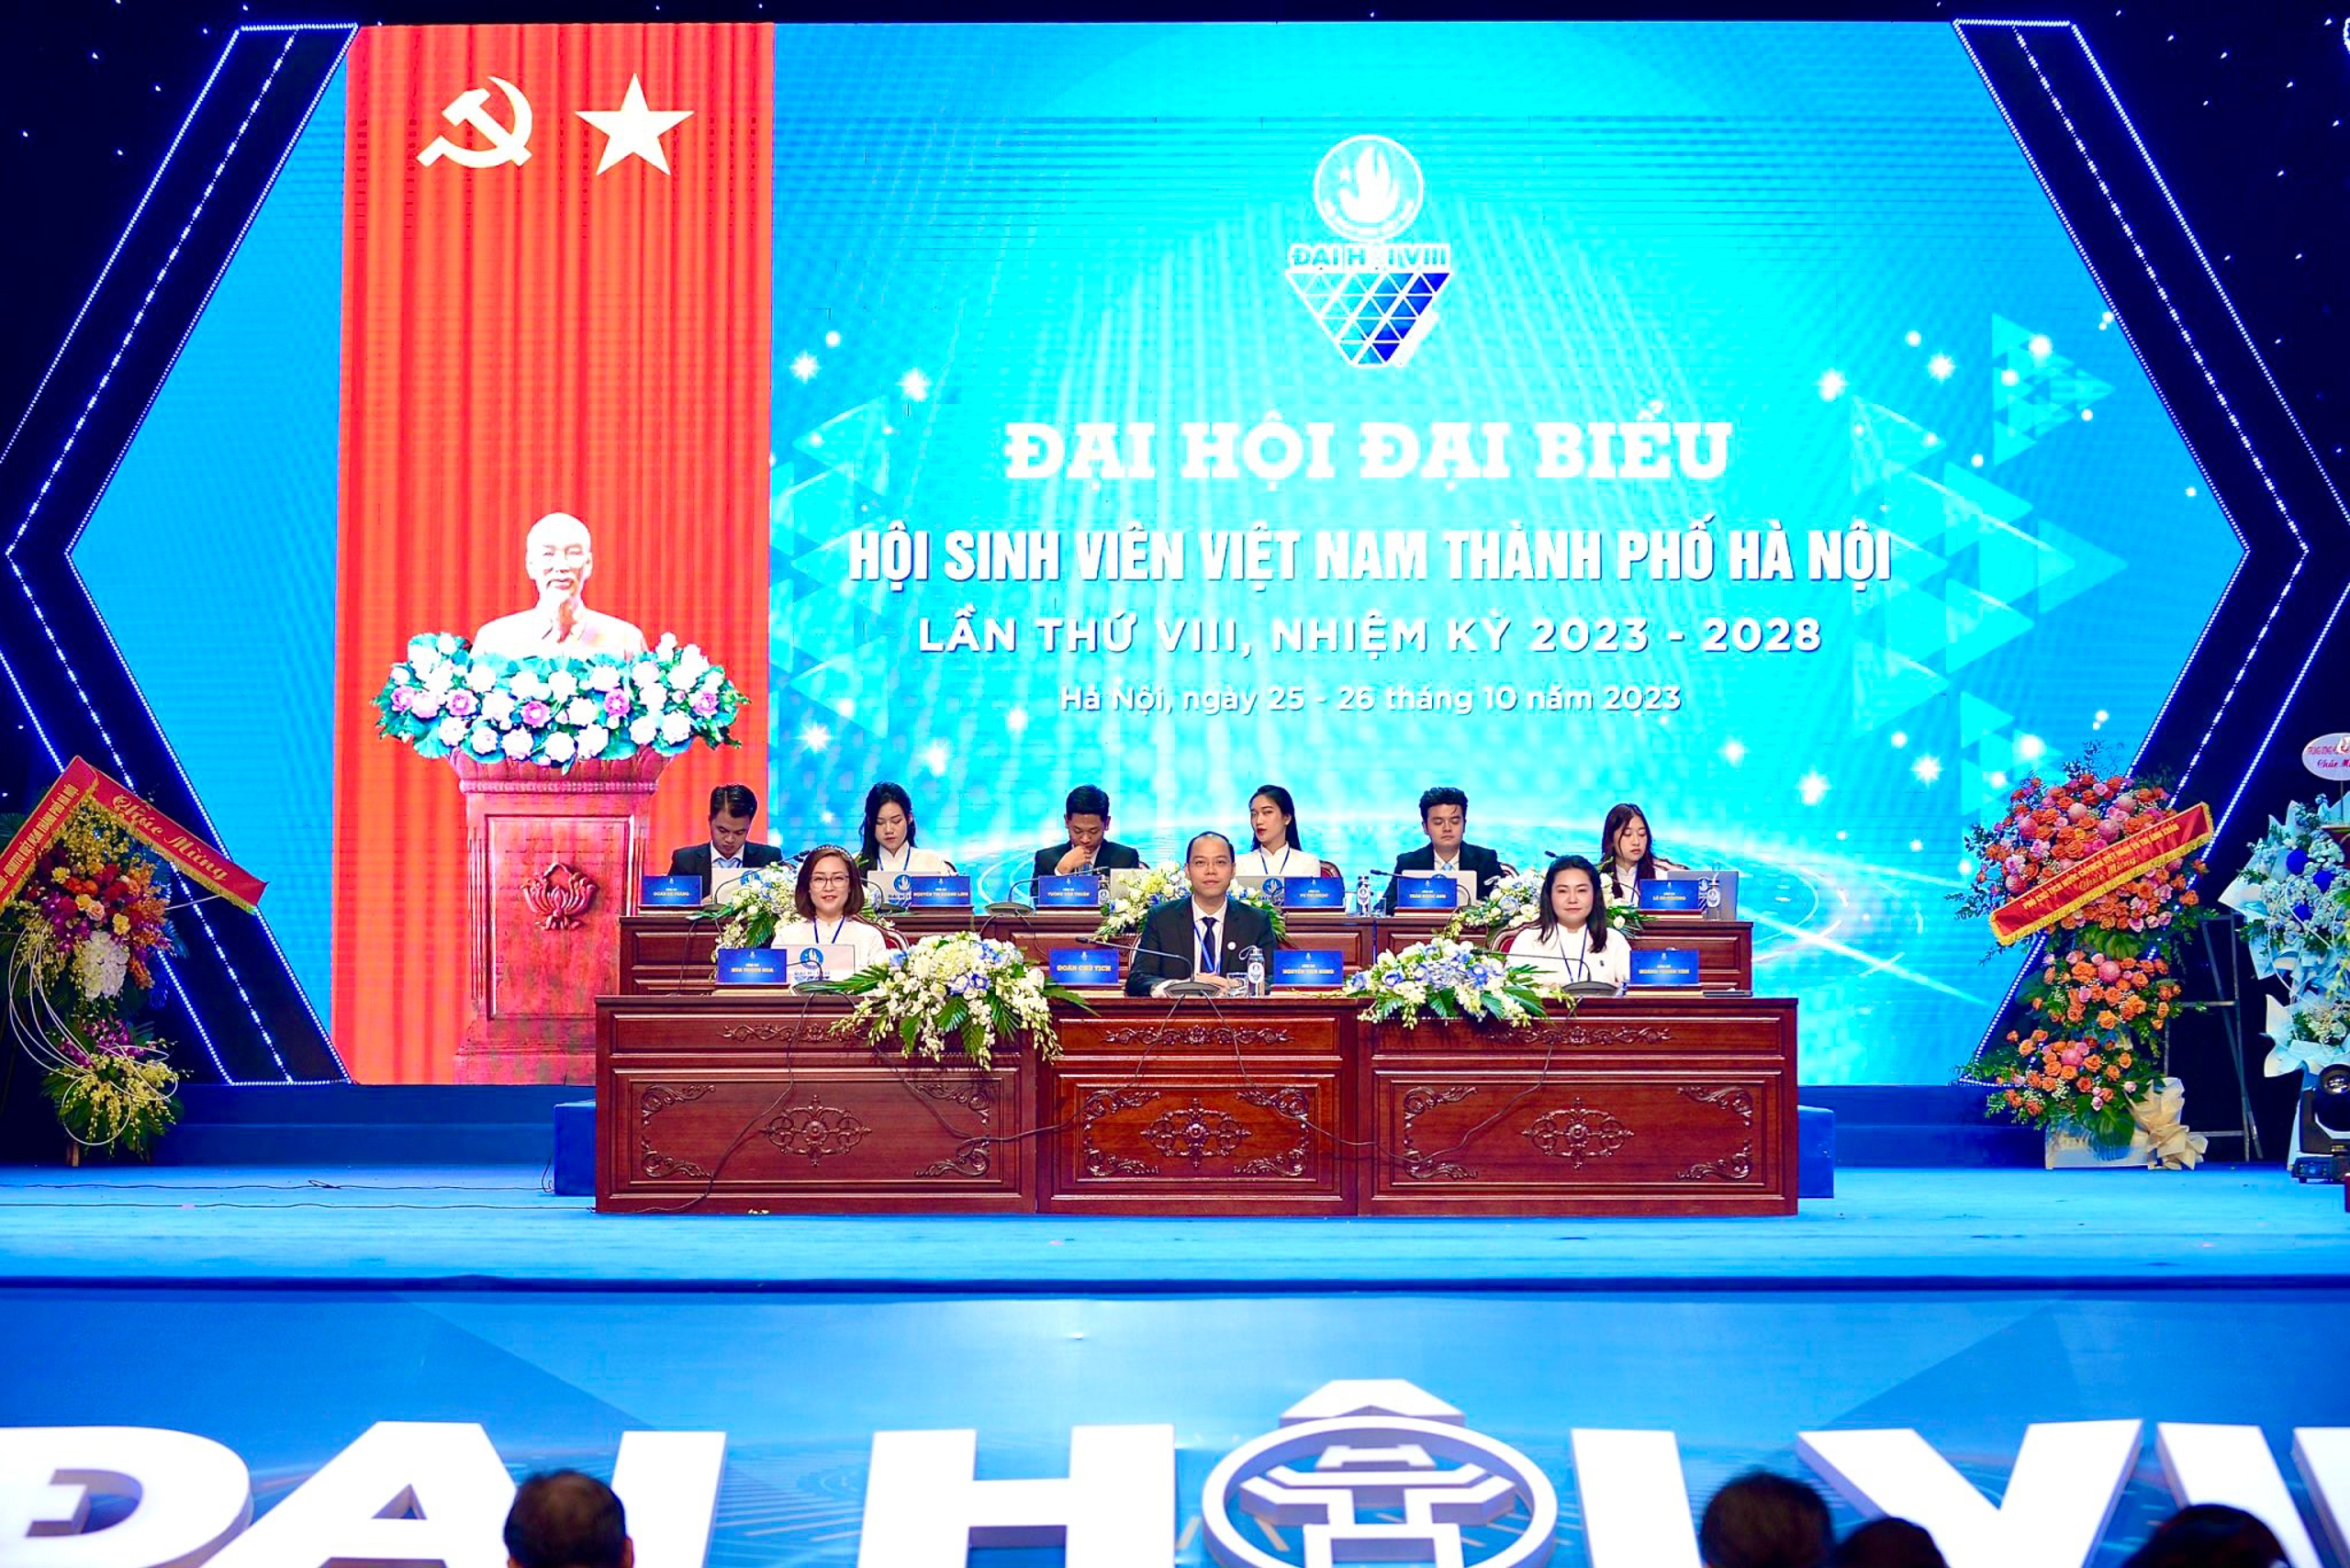 Toàn cảnh Ðại hội đại biểu Hội Sinh viên Việt Nam thành phố Hà Nội lần thứ VIII